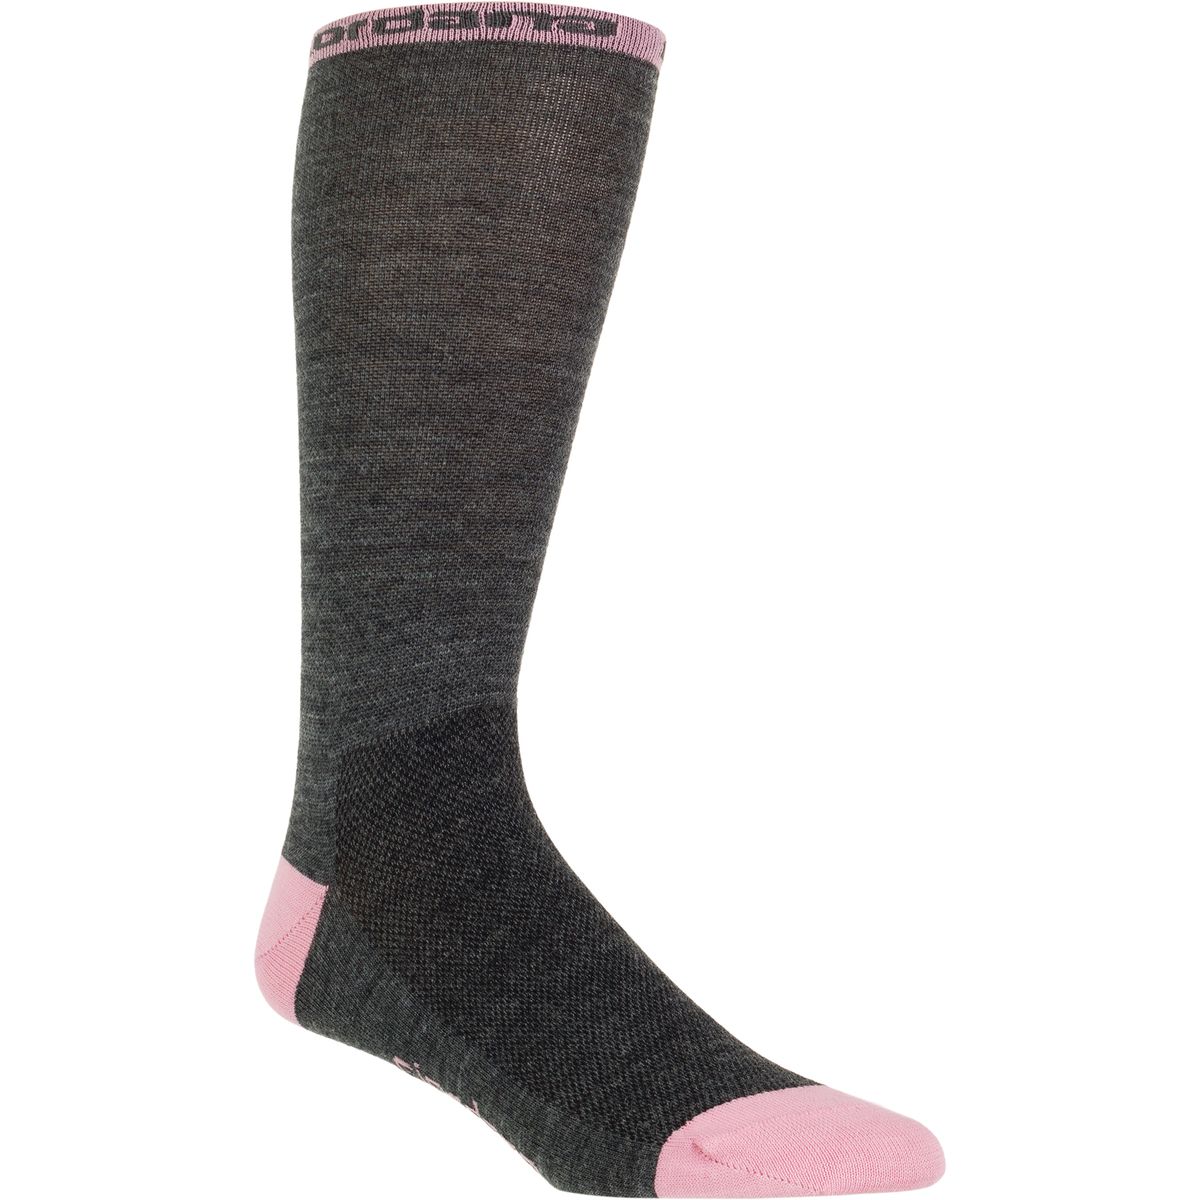 Giordana Merino 7in Wool Socks - Men's